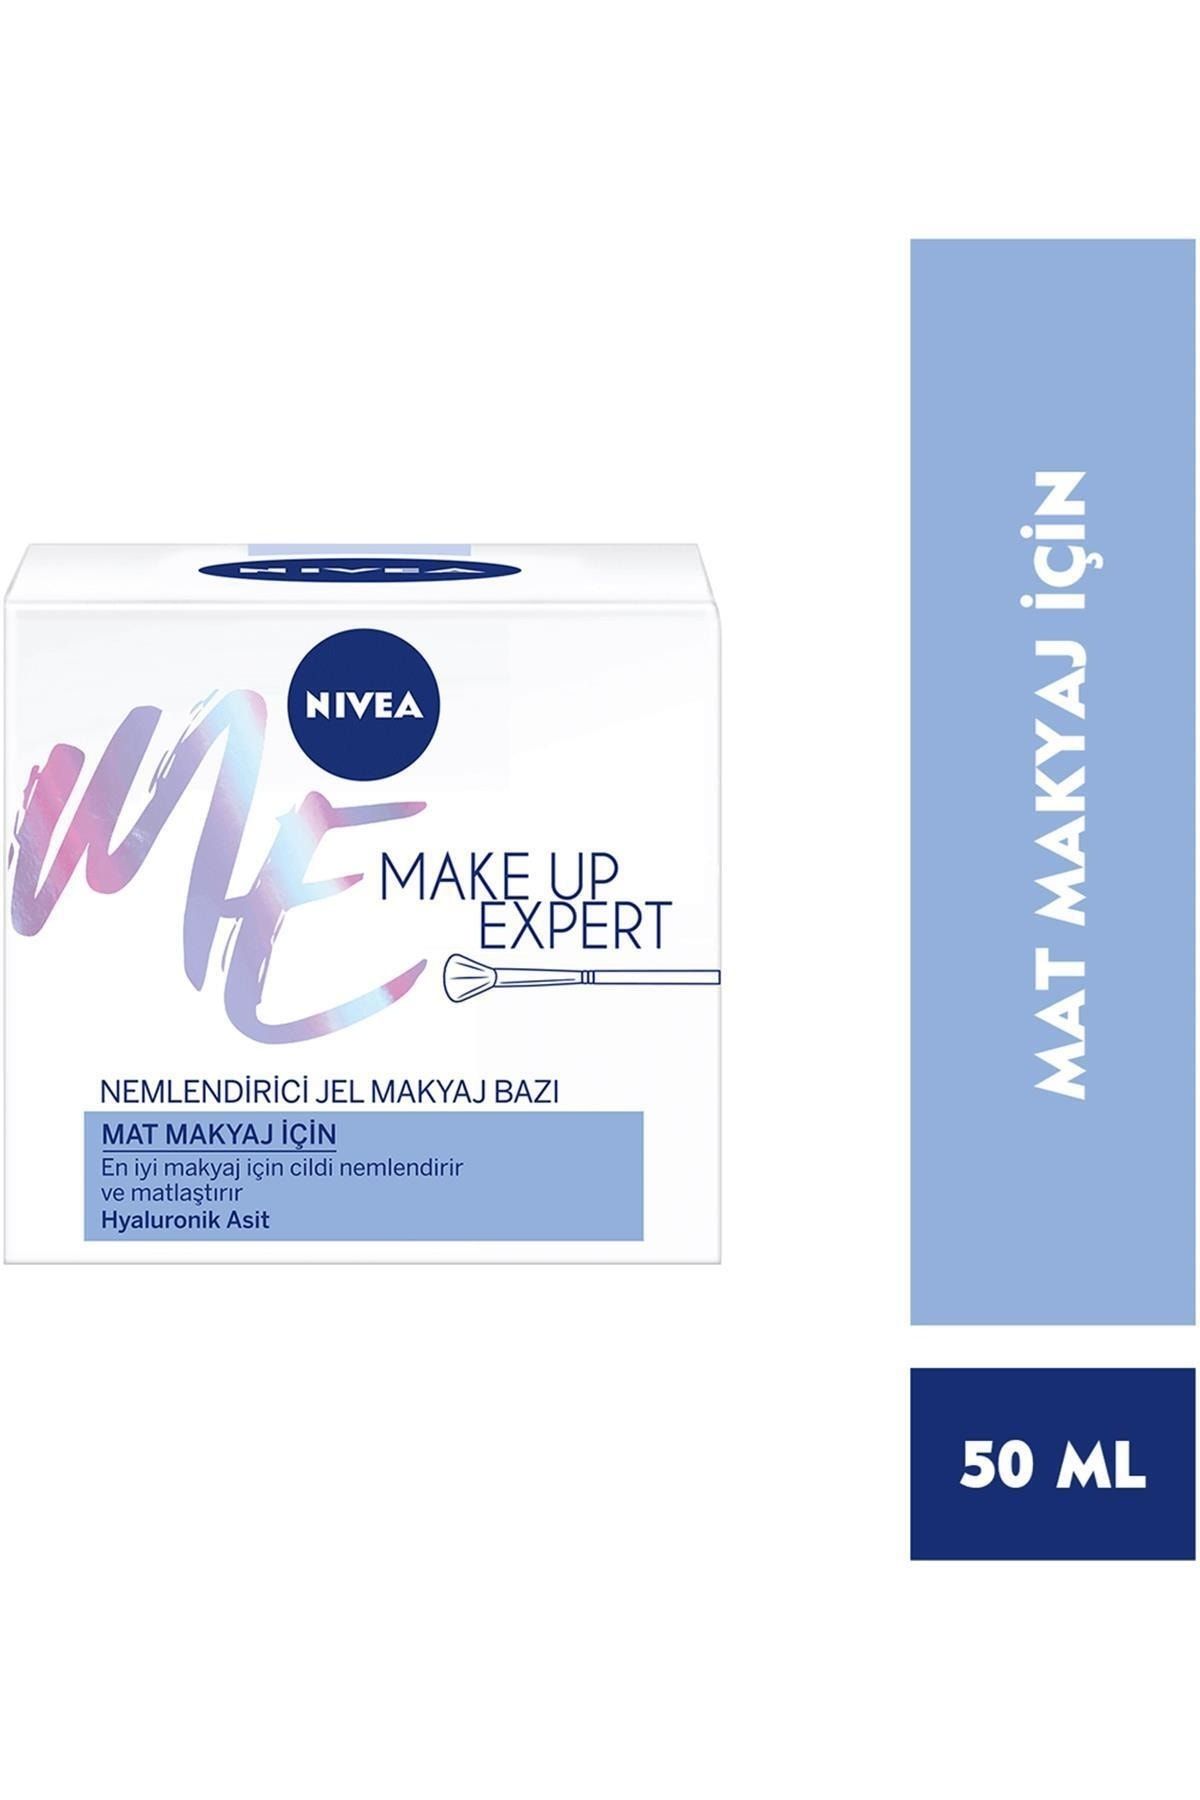 NIVEA Make Up Expert Mat Makyaj Için Nemlendirici Jel Makyaj Bazı 50 Ml Koçakozmetik.